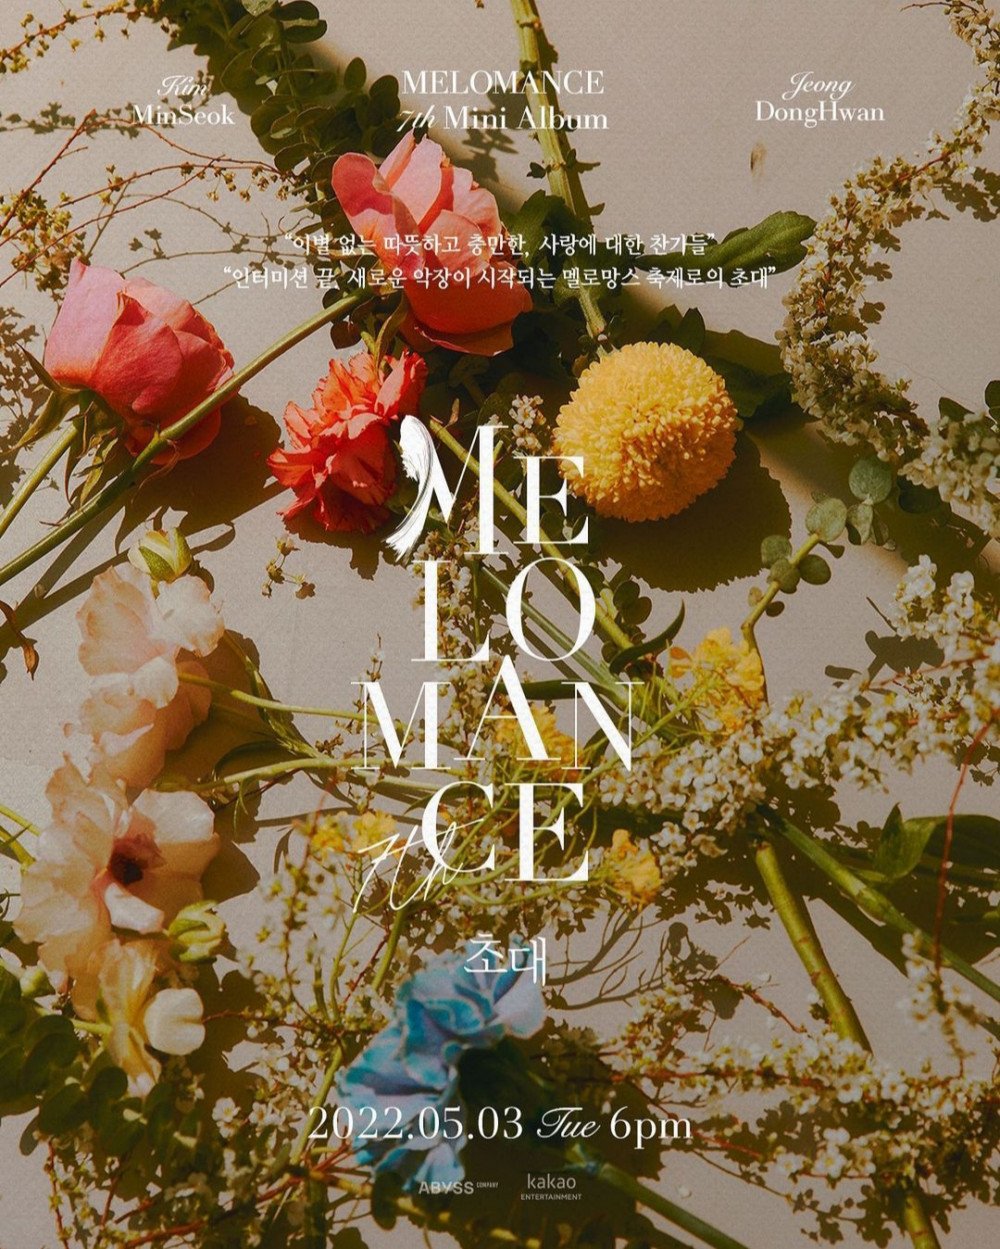 Melomance вернутся с новым мини-альбомом в мае